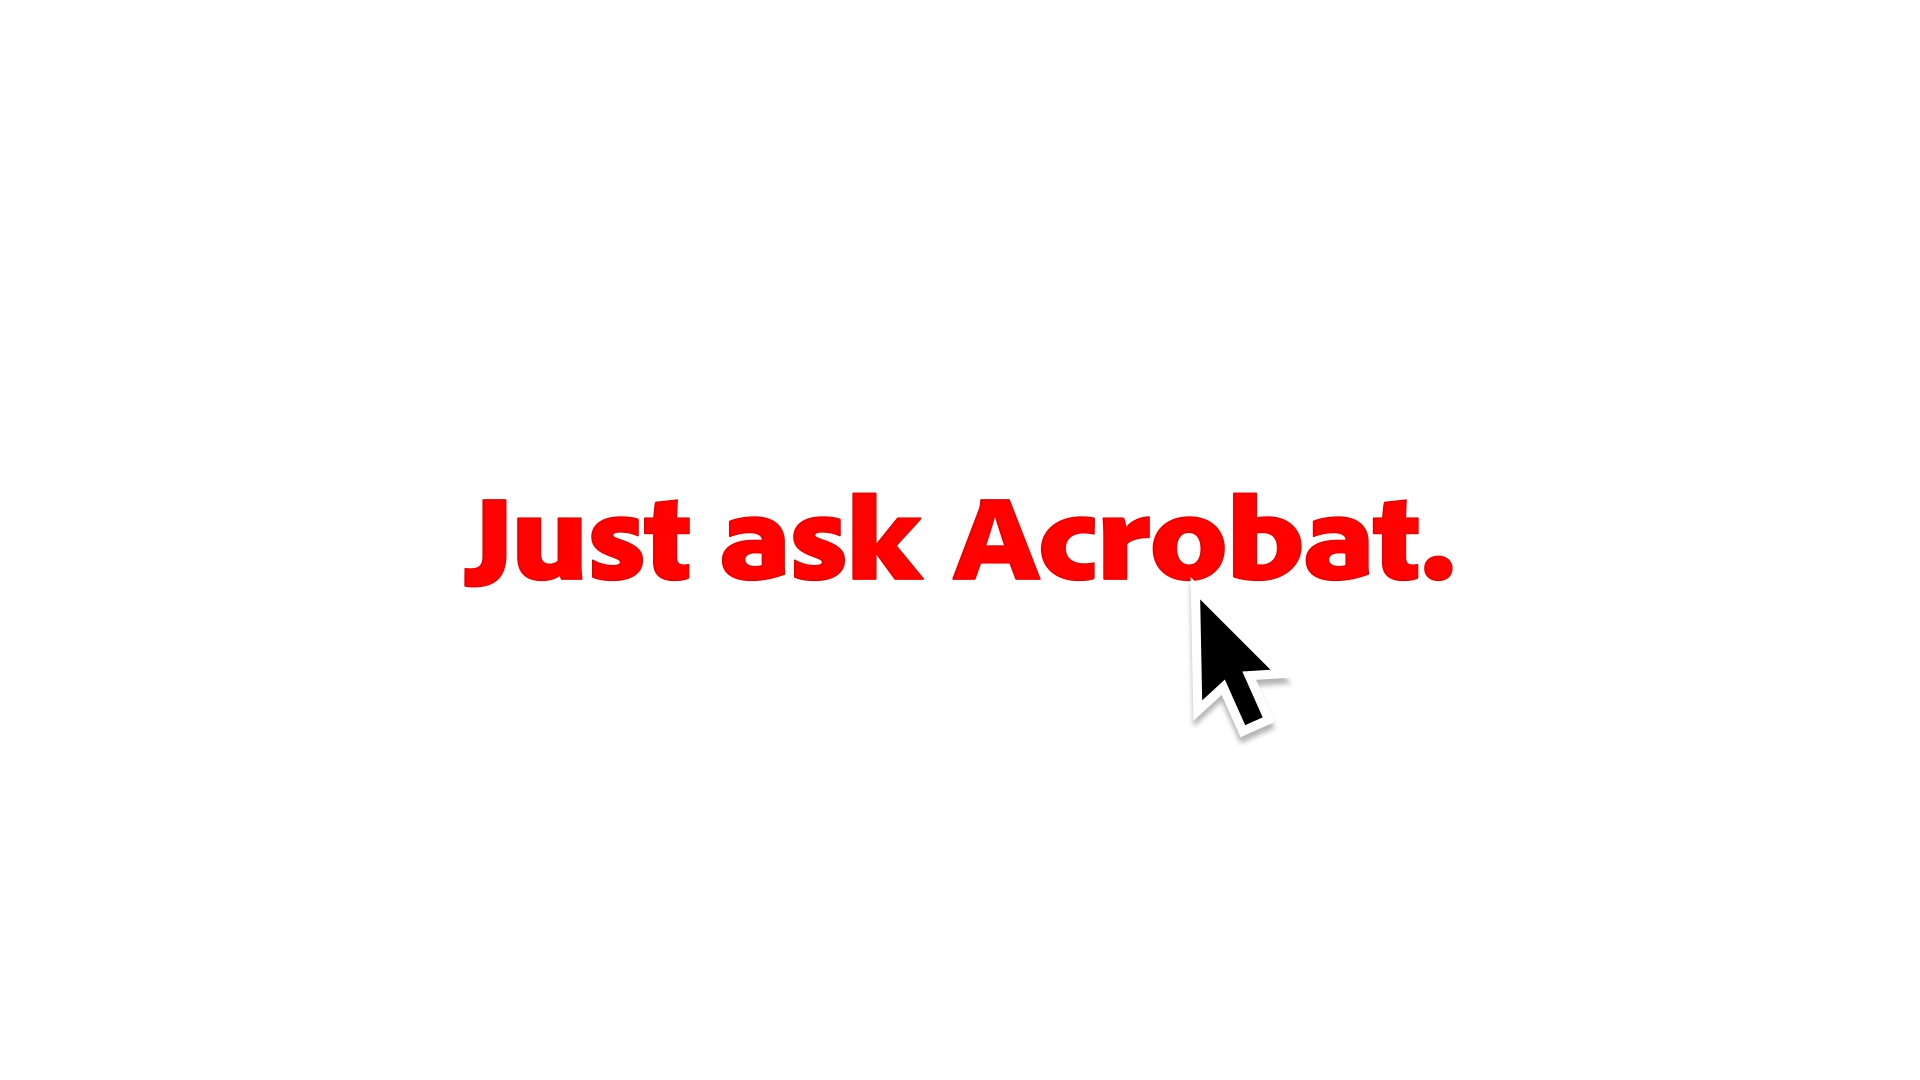 Acrobat AI Assistant Video